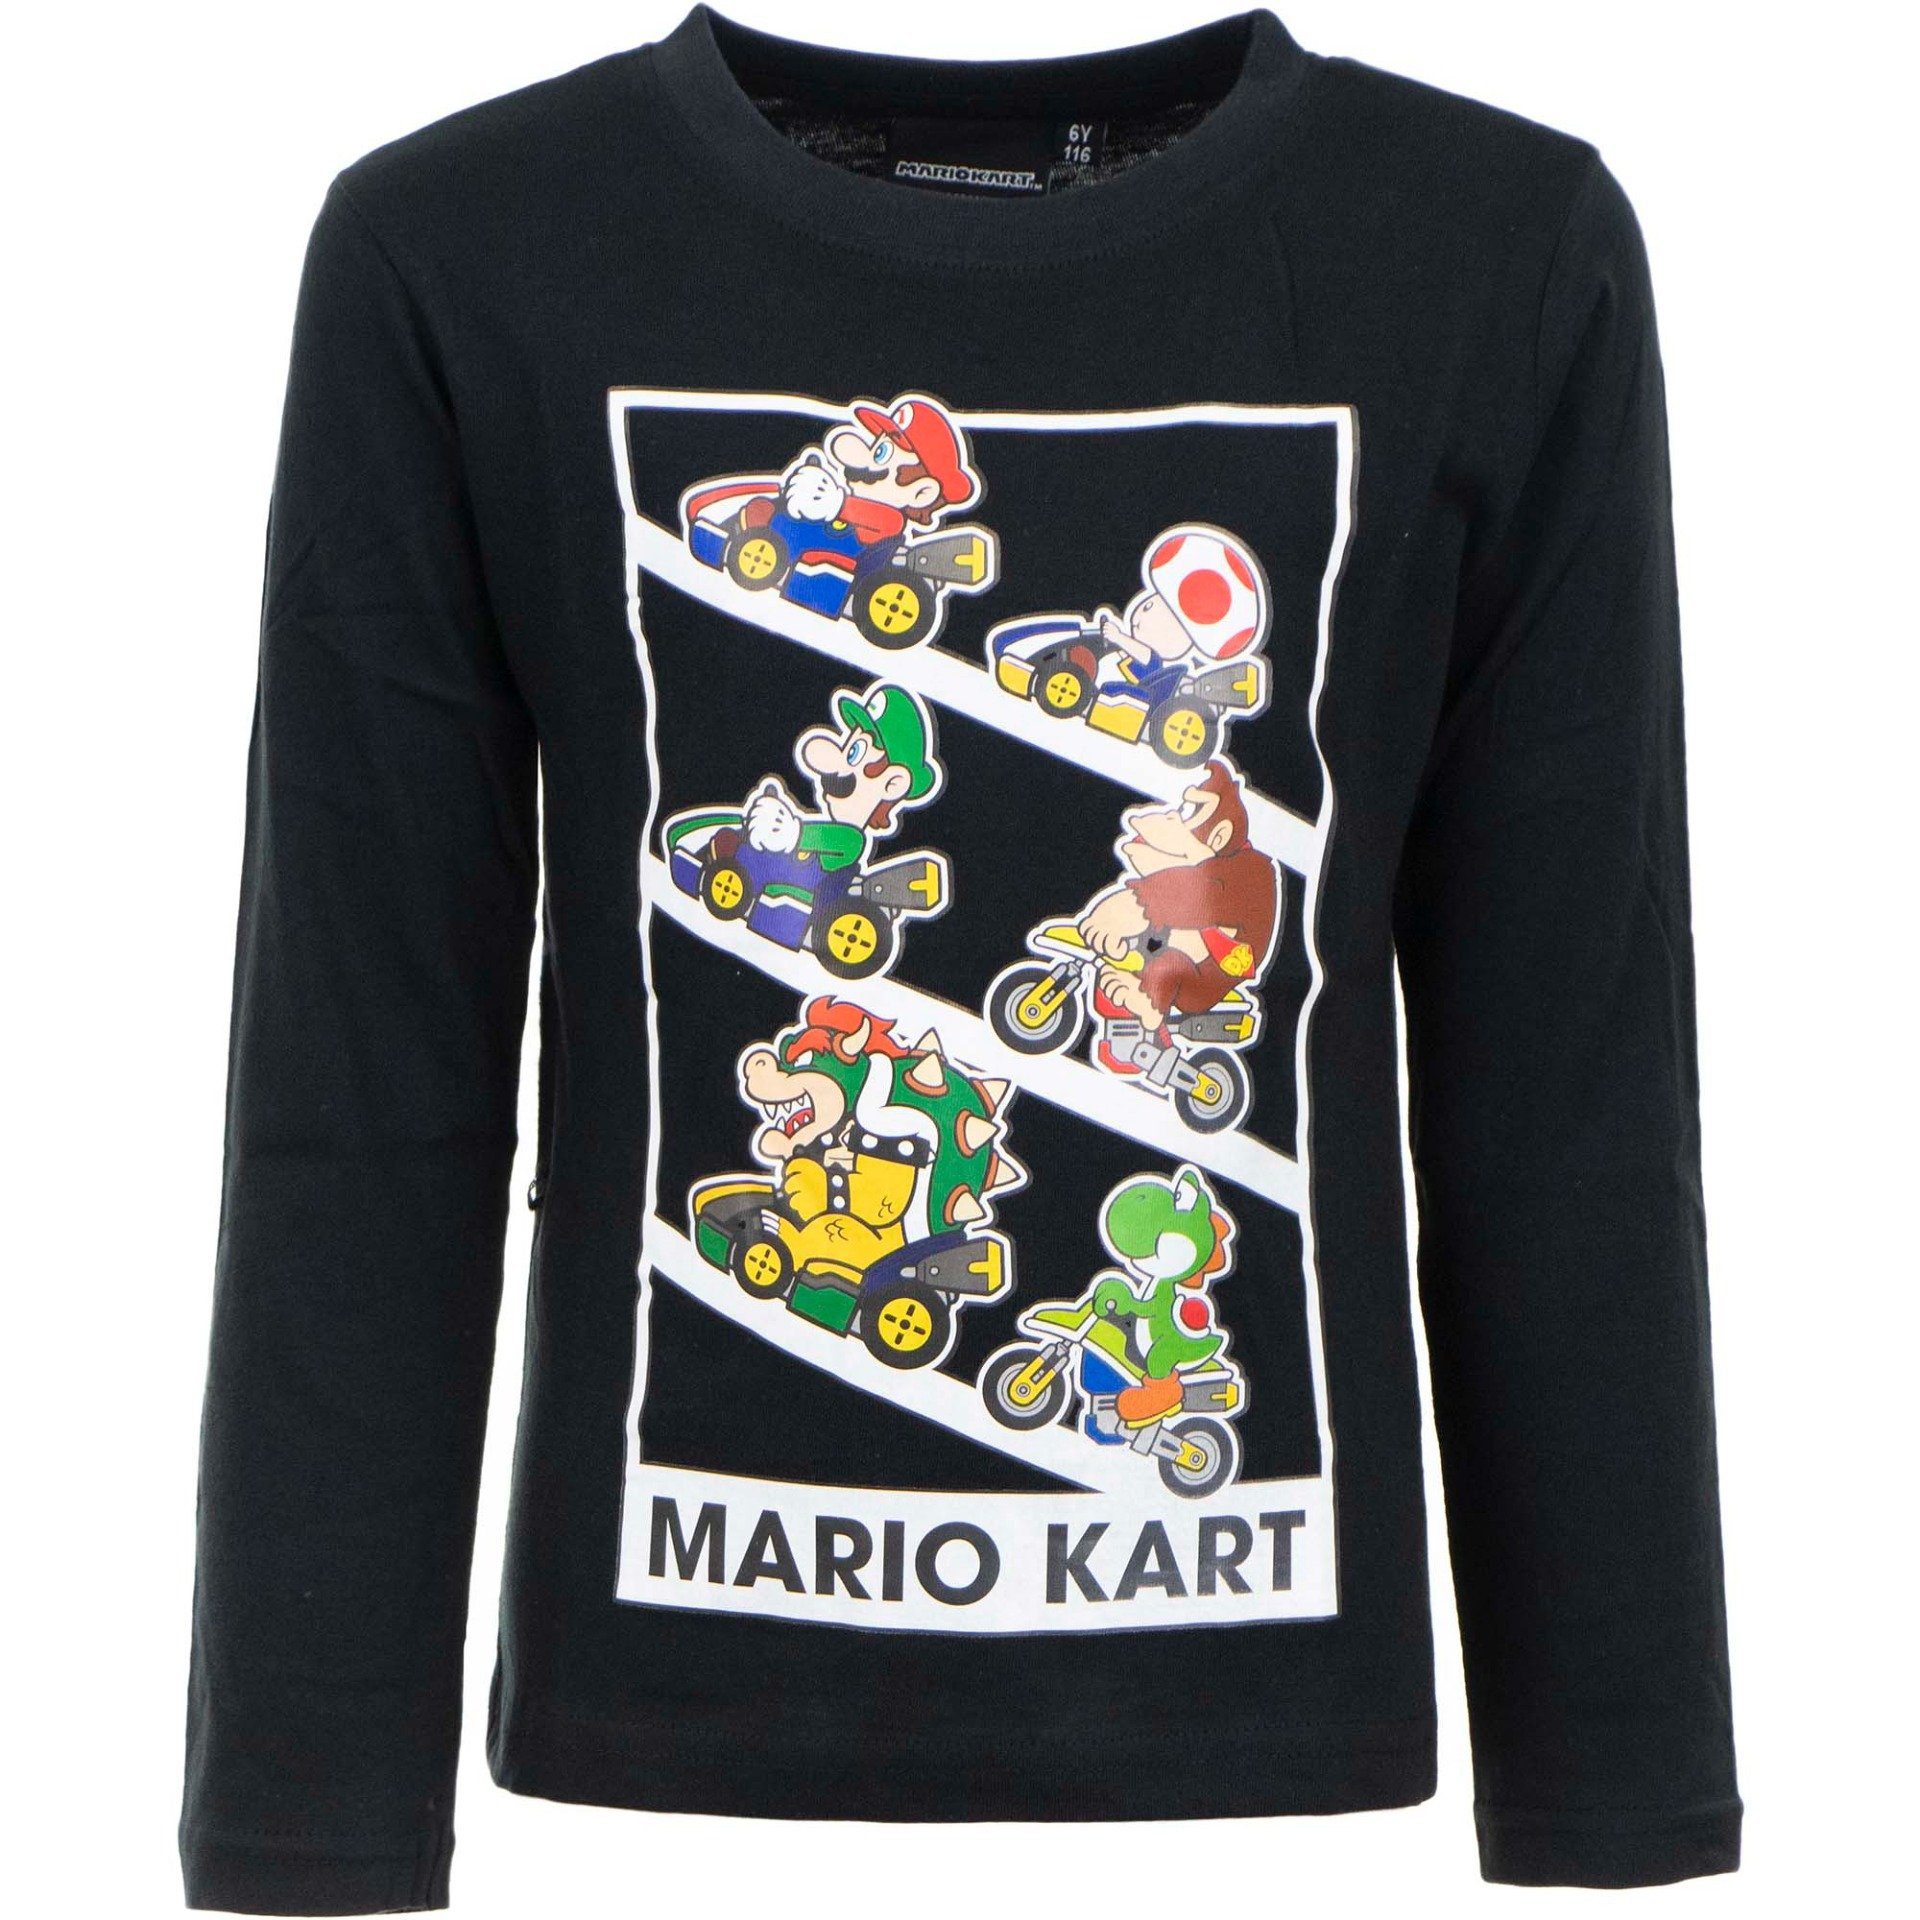 Super Mario T-Shirt SUPER MARIO KART LANGARM T-SHIRT Schwarz Jungen + Mädchen Gr. 98 104 110 116 122 128 ca. 3 4 5 6 7 8 Jahre